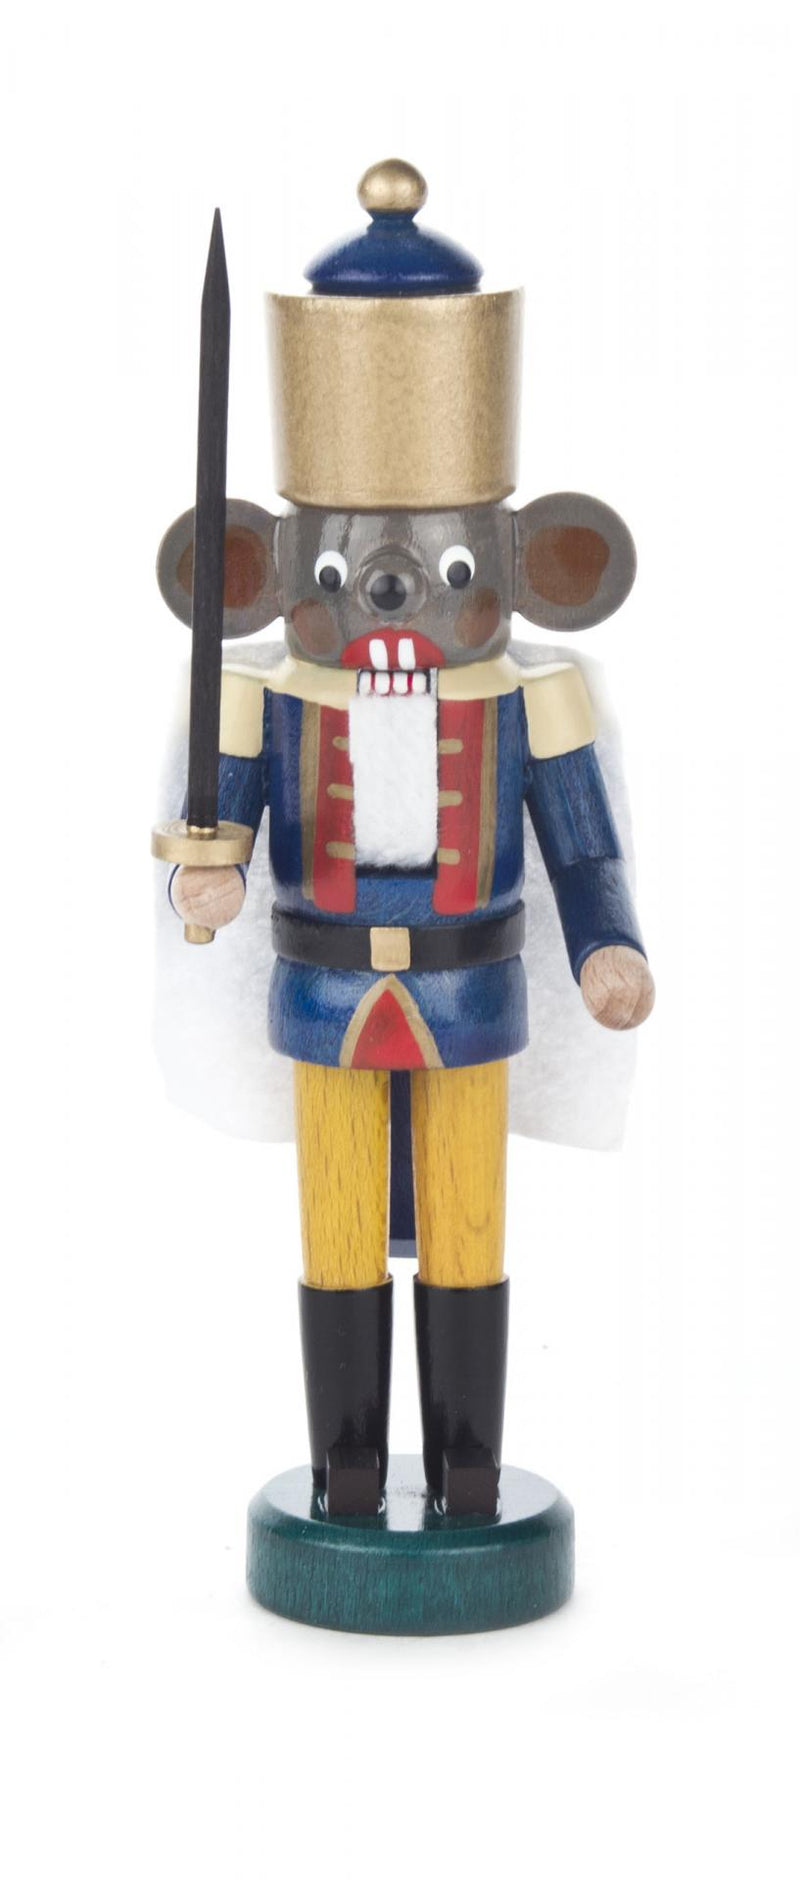 071/187 - Nutcracker Mouse King Mini